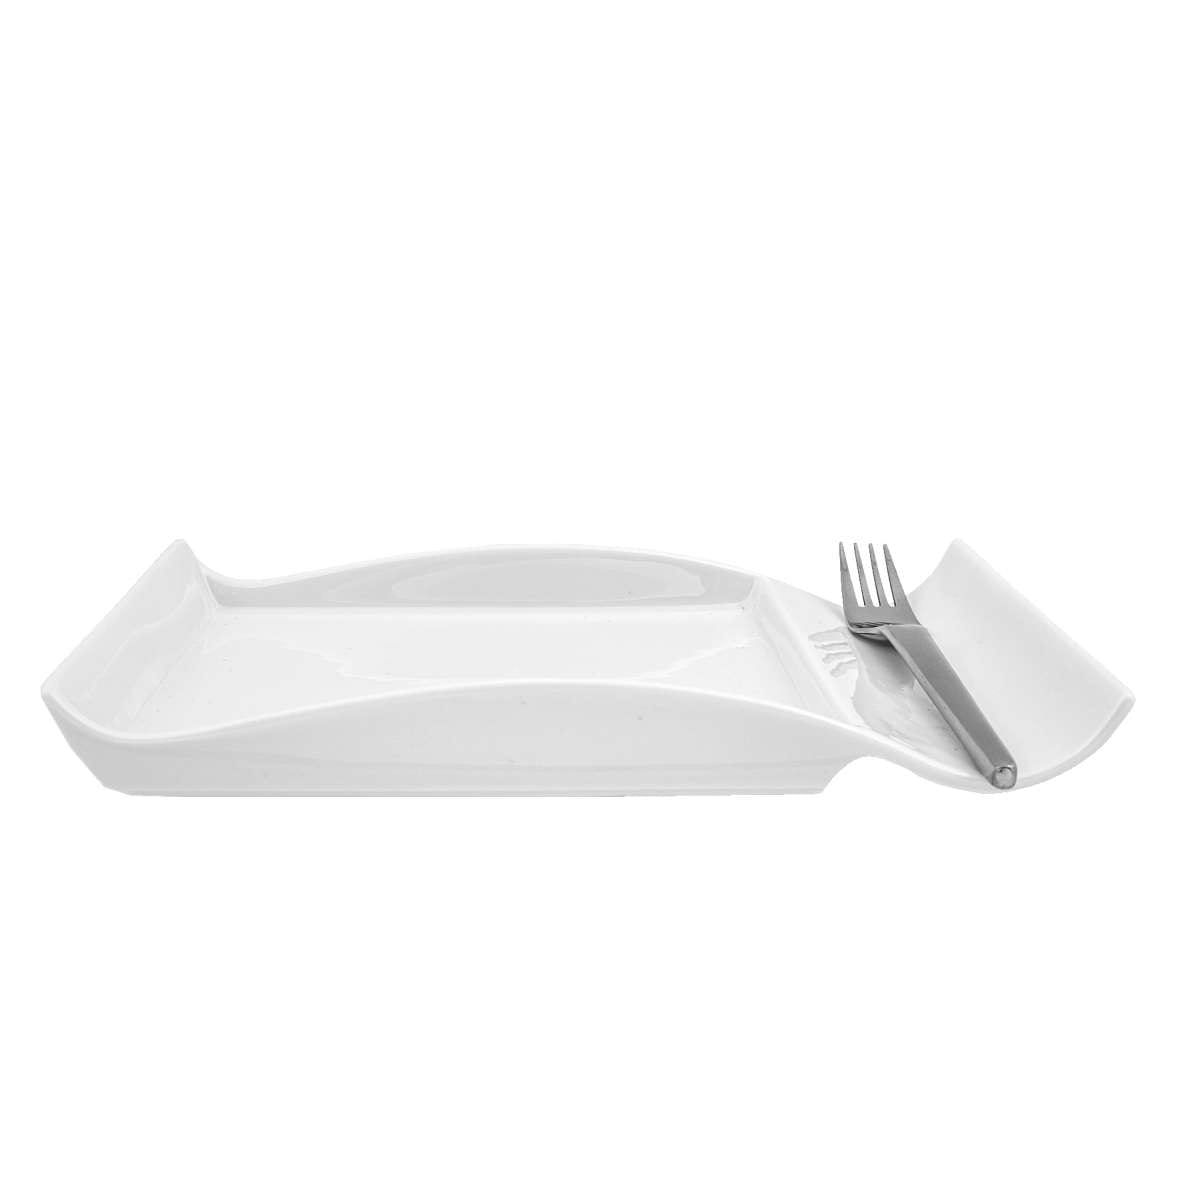 Πιάτο Πορσελάνης Λευκό Art Et Lumiere 25×15,5×2,5εκ. 05991 (Υλικό: Πορσελάνη, Χρώμα: Λευκό) – Art Et Lumiere – lumiere_05991